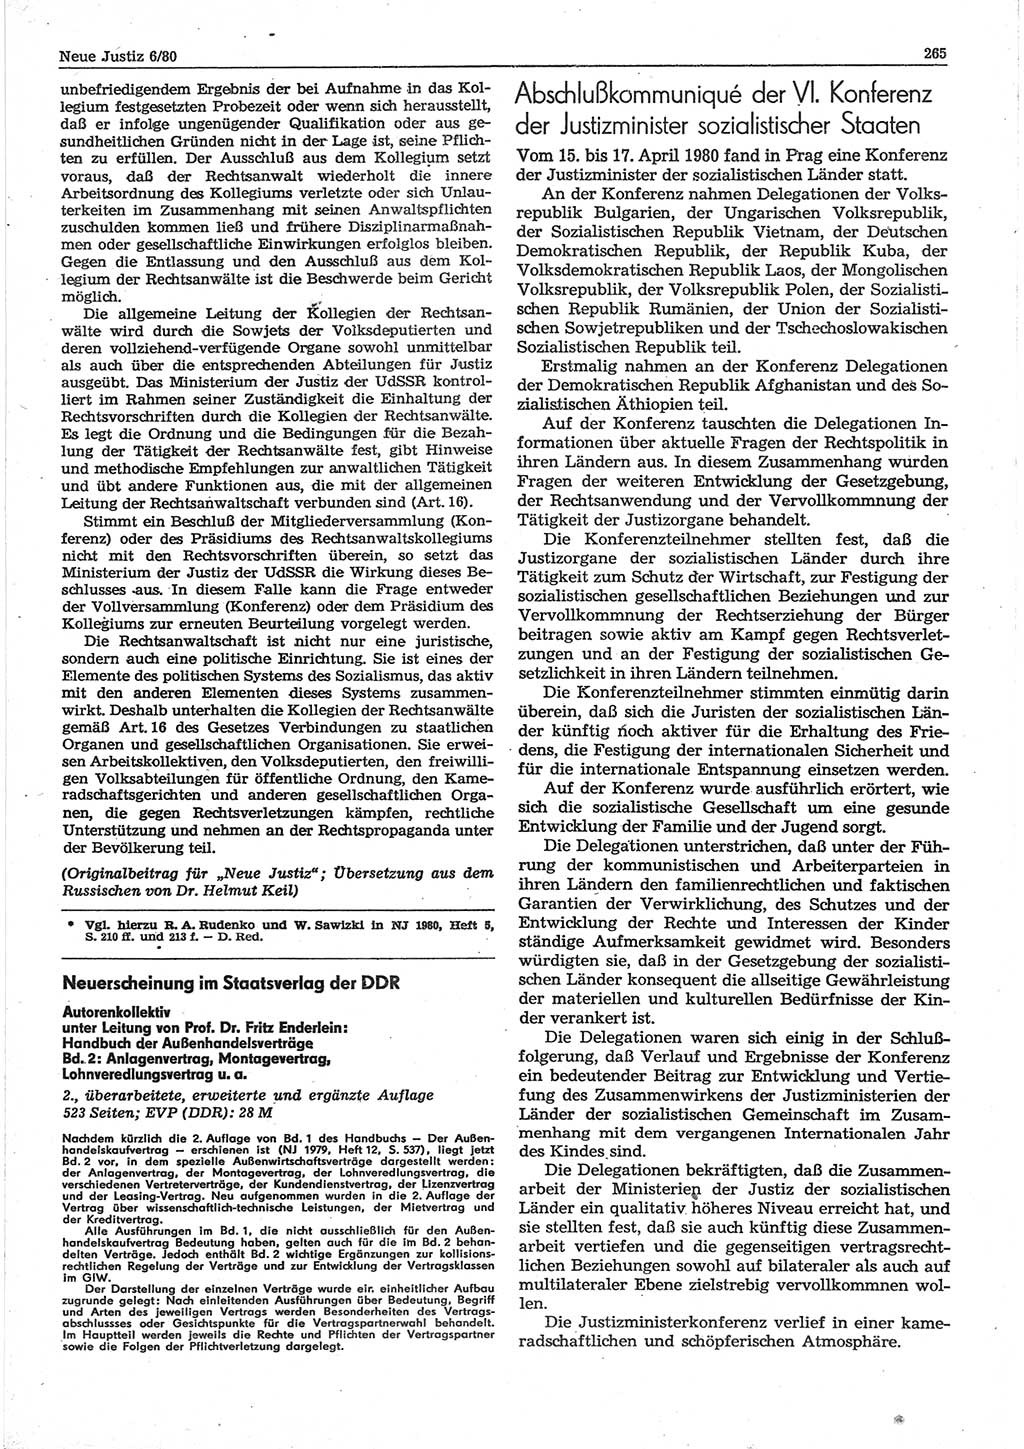 Neue Justiz (NJ), Zeitschrift für sozialistisches Recht und Gesetzlichkeit [Deutsche Demokratische Republik (DDR)], 34. Jahrgang 1980, Seite 265 (NJ DDR 1980, S. 265)